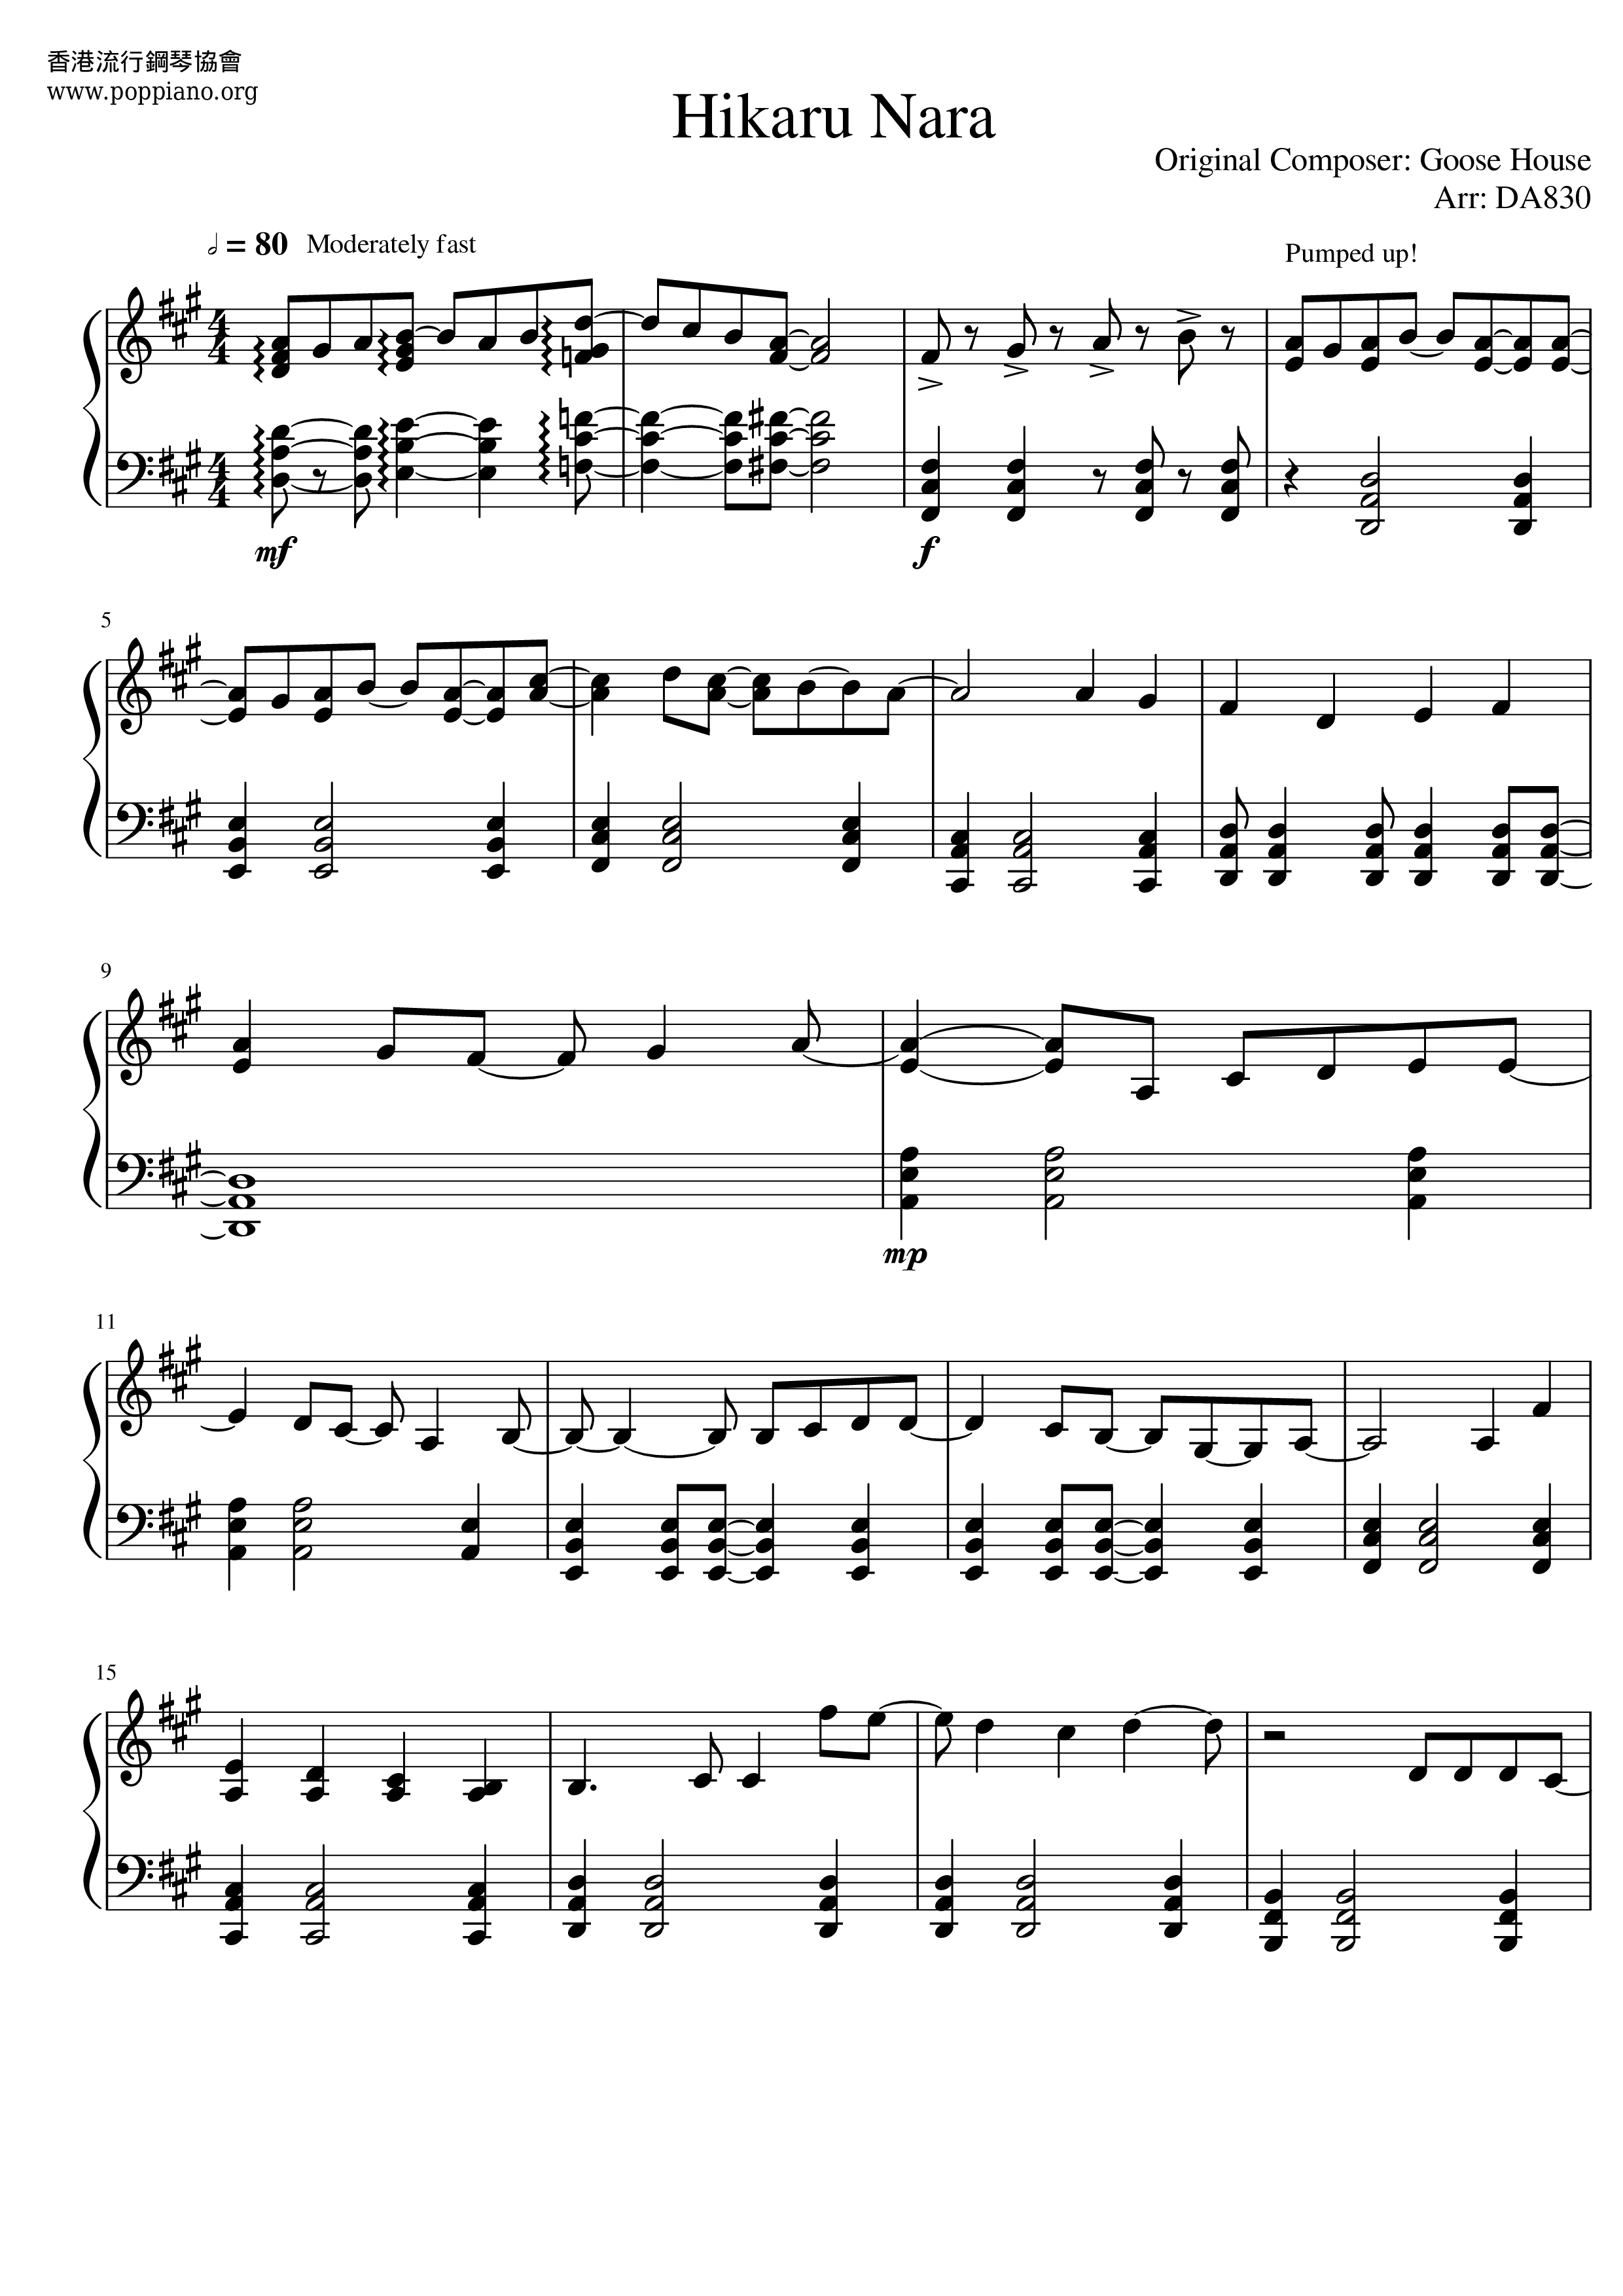 Shigatsu Wa Kimi No Uso - Hikaru Nara Score